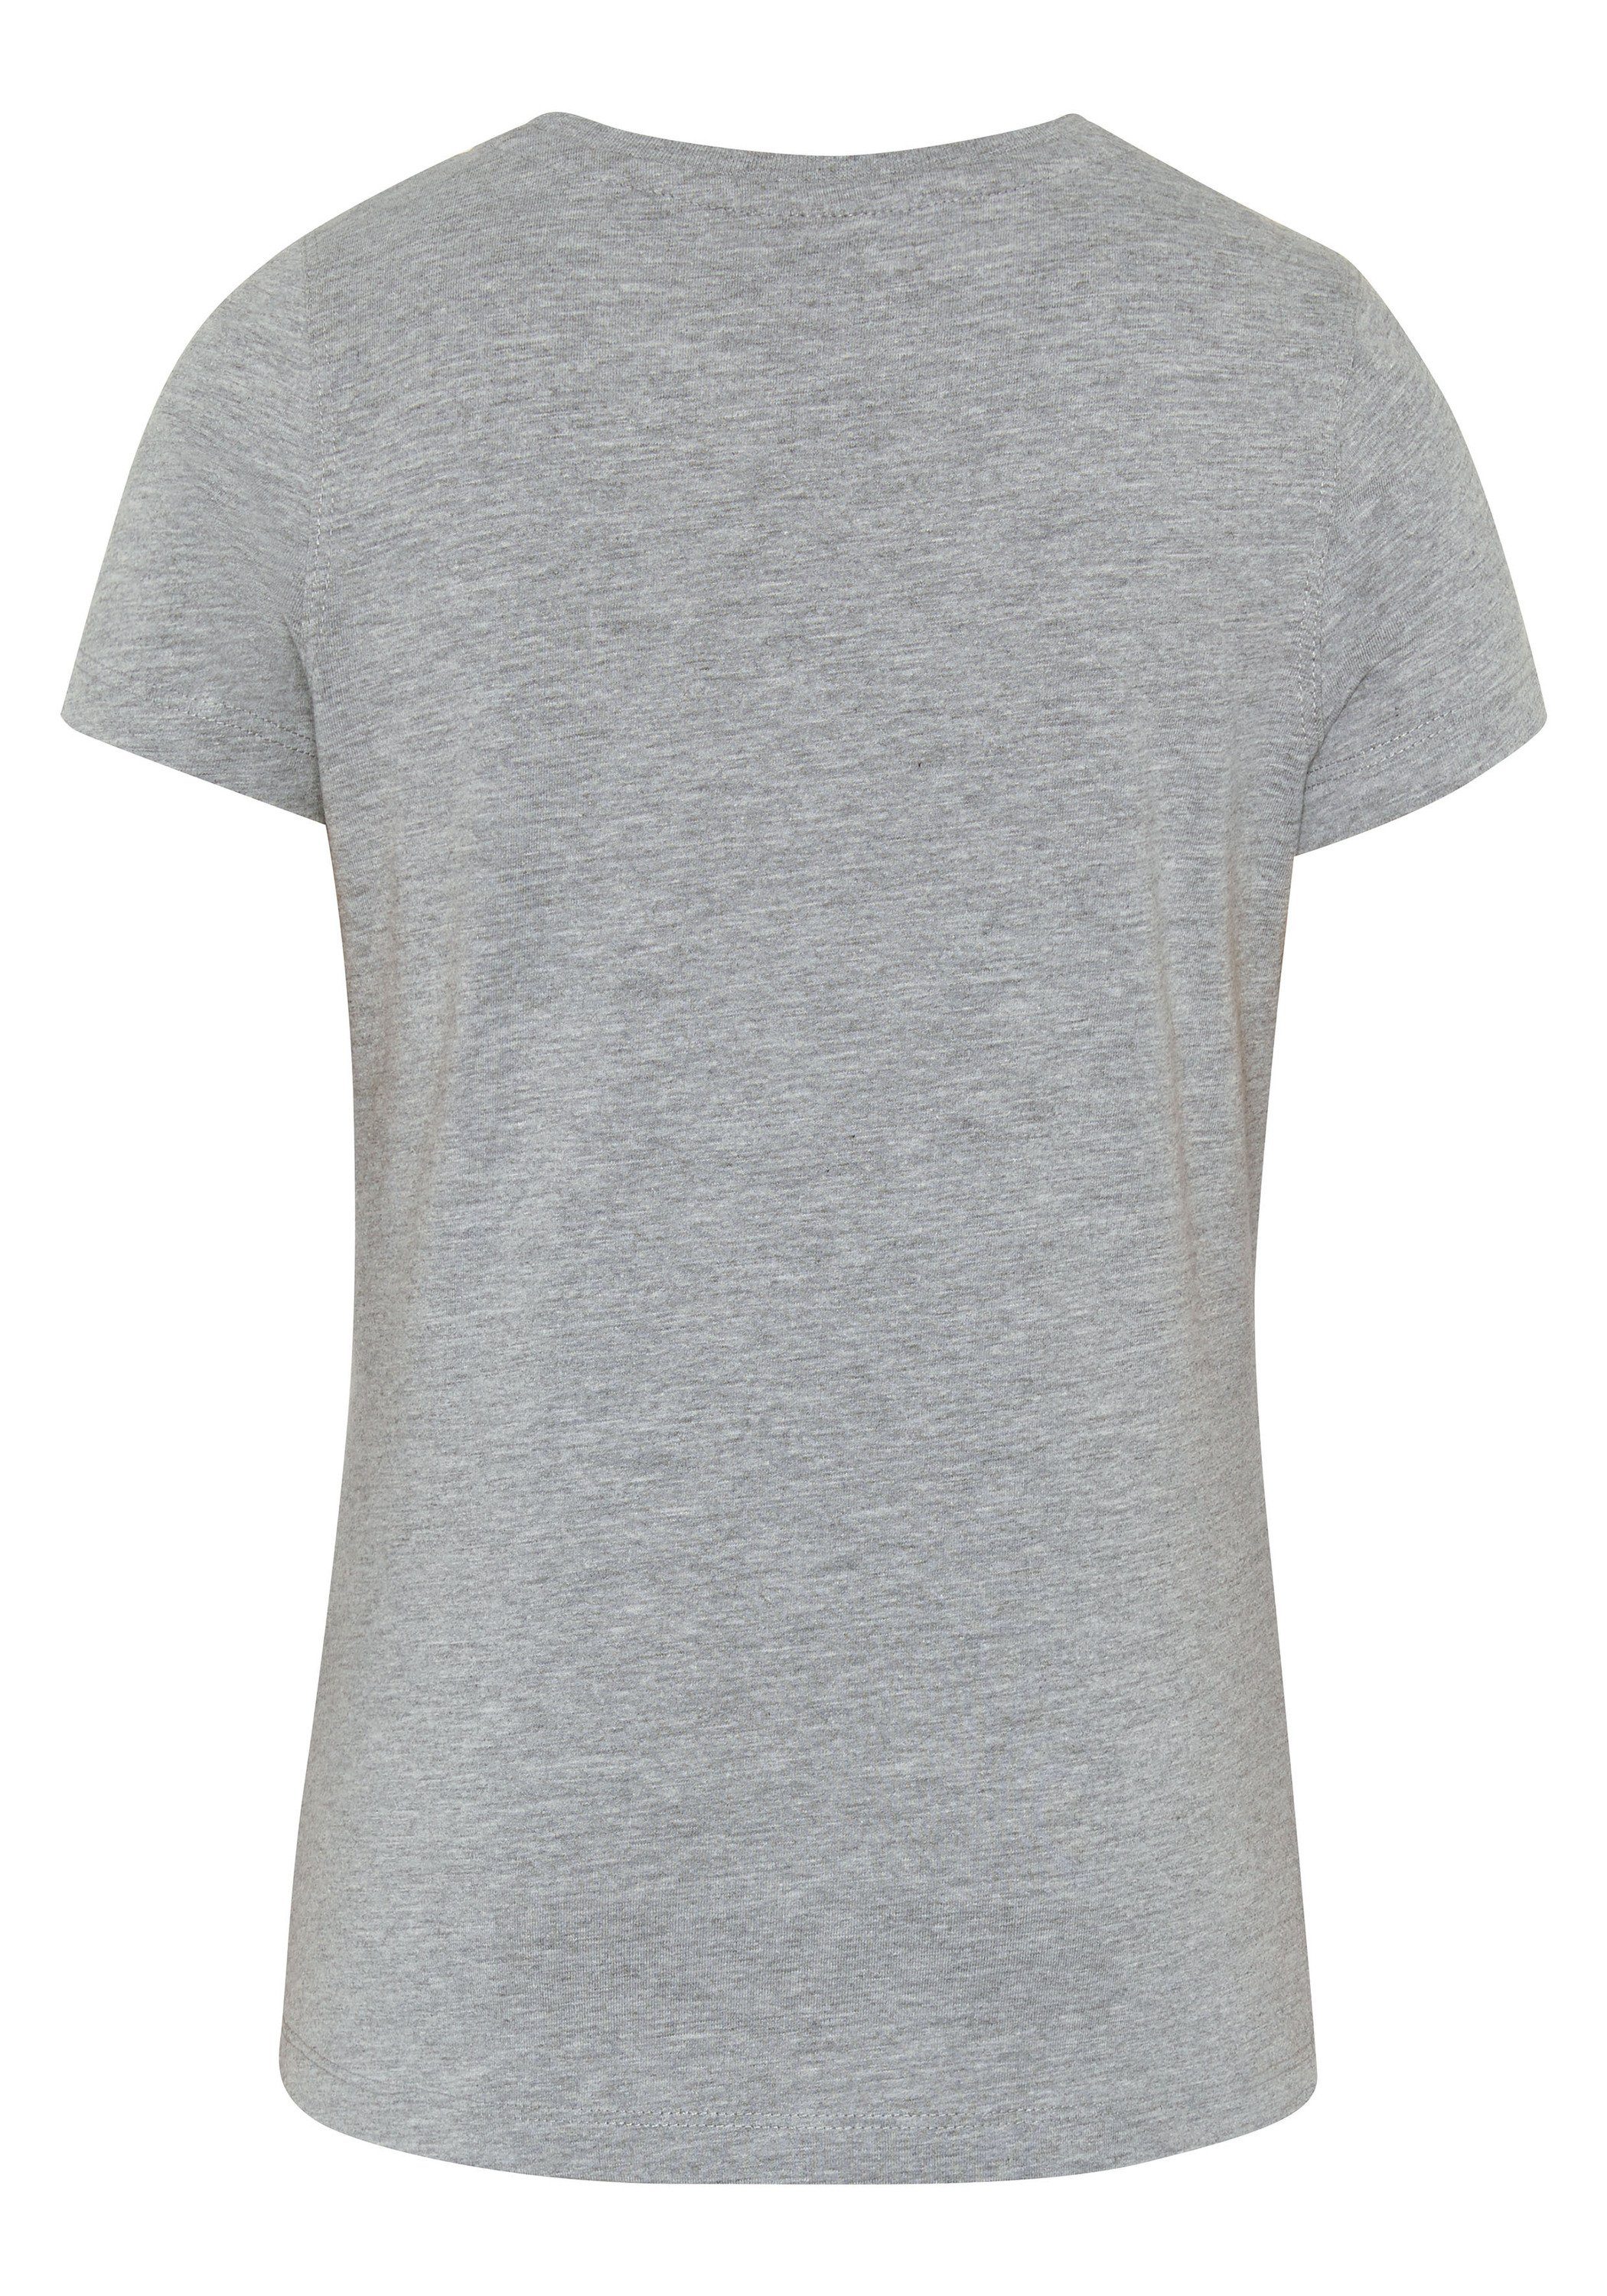 Gray Neutr. Polo Print-Shirt Sylt mit Glitzer-Logo